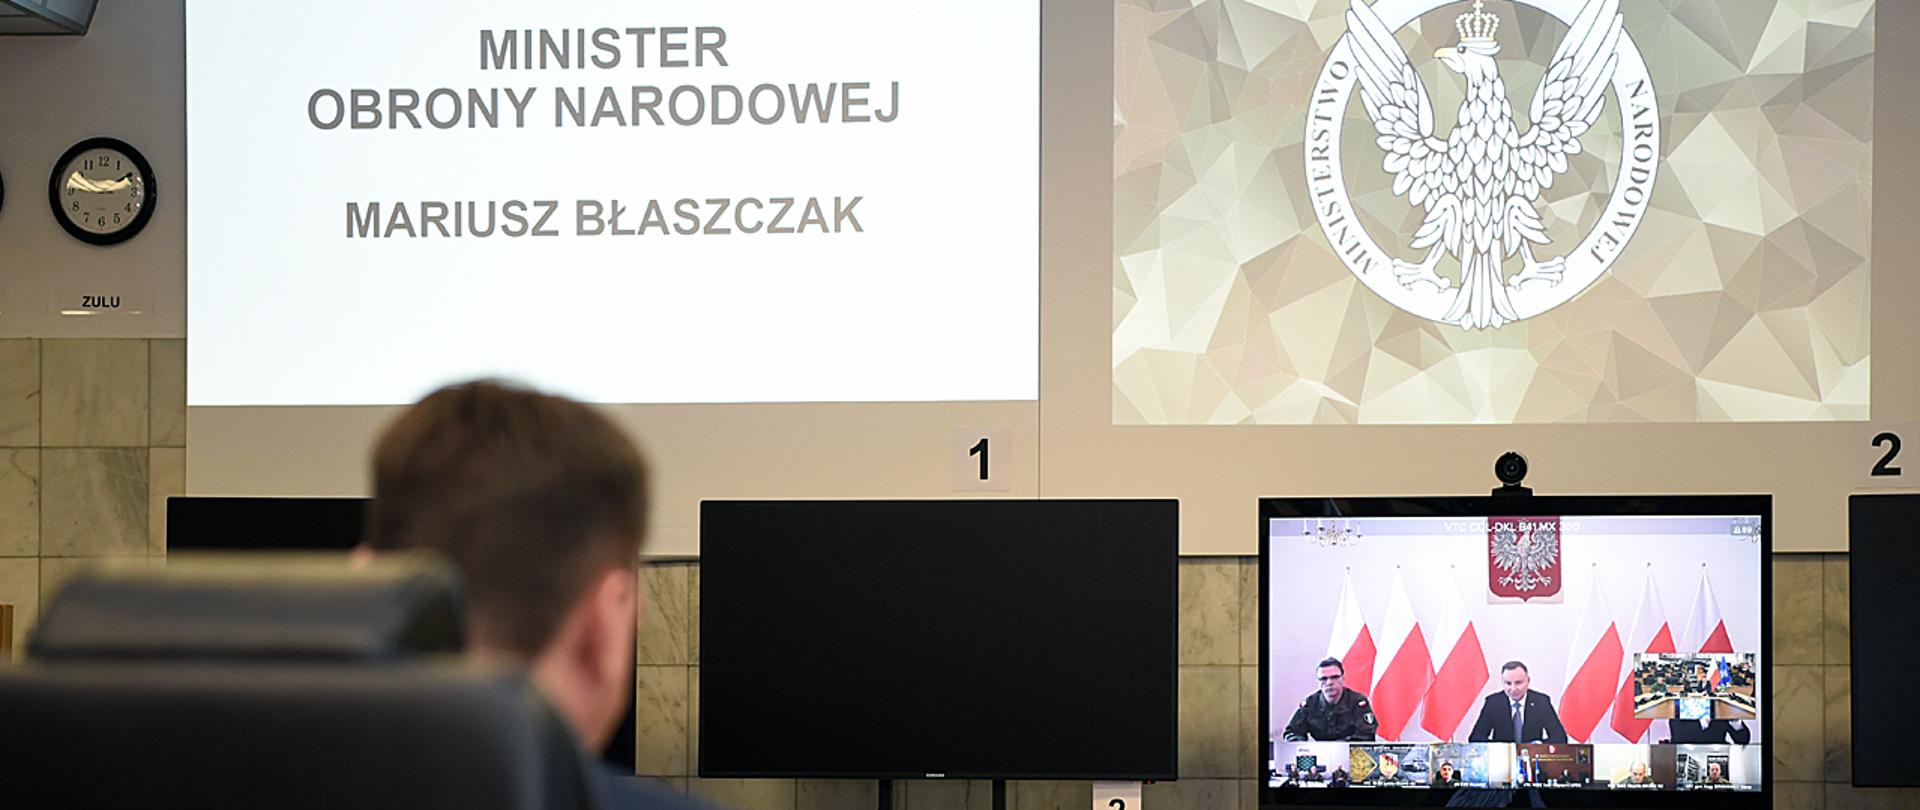 Szef MON podczas wideokonferencji na dużej sali. Na monitorze Prezydent Andrzej Duda i dowódcy Wojska Polskiego. Na ścianie logo MON i napis "MINISTER OBRONY NARODOWEJ MARIUSZ BŁASZCZAK".